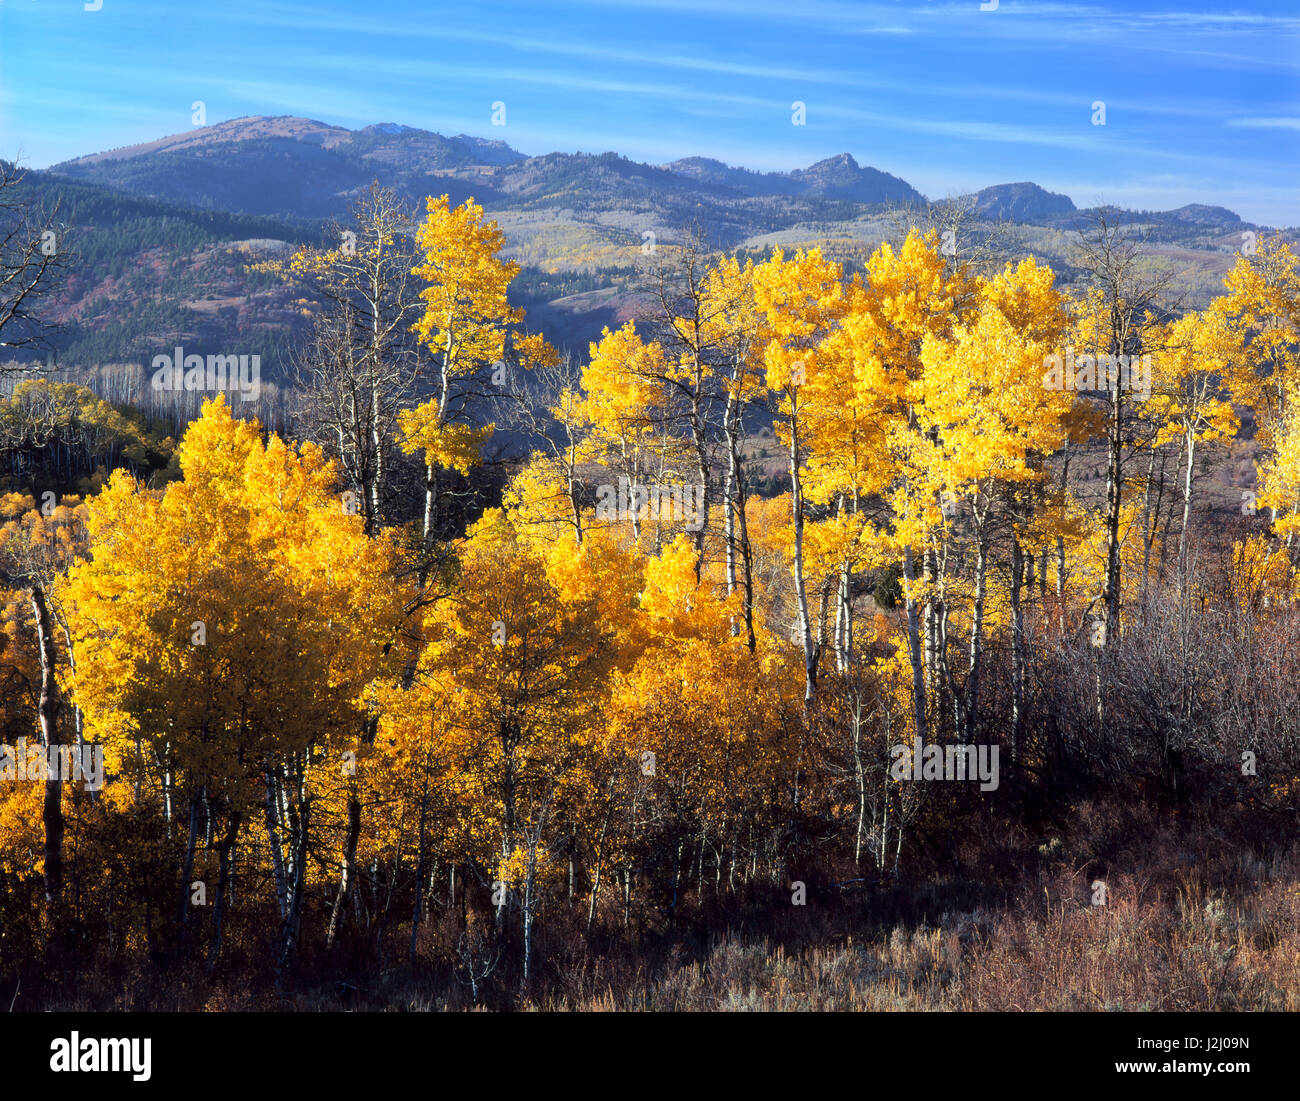 L'Utah. USA. Tremble (Populus tremuloides) en automne. Mt. Magog et Naomi Peak sur la crête principale de la rivière Plage dans la distance. Montagnes Wasatch. Uinta-Wasatch-Cache National Forest. Tailles disponibles (grand format) Banque D'Images